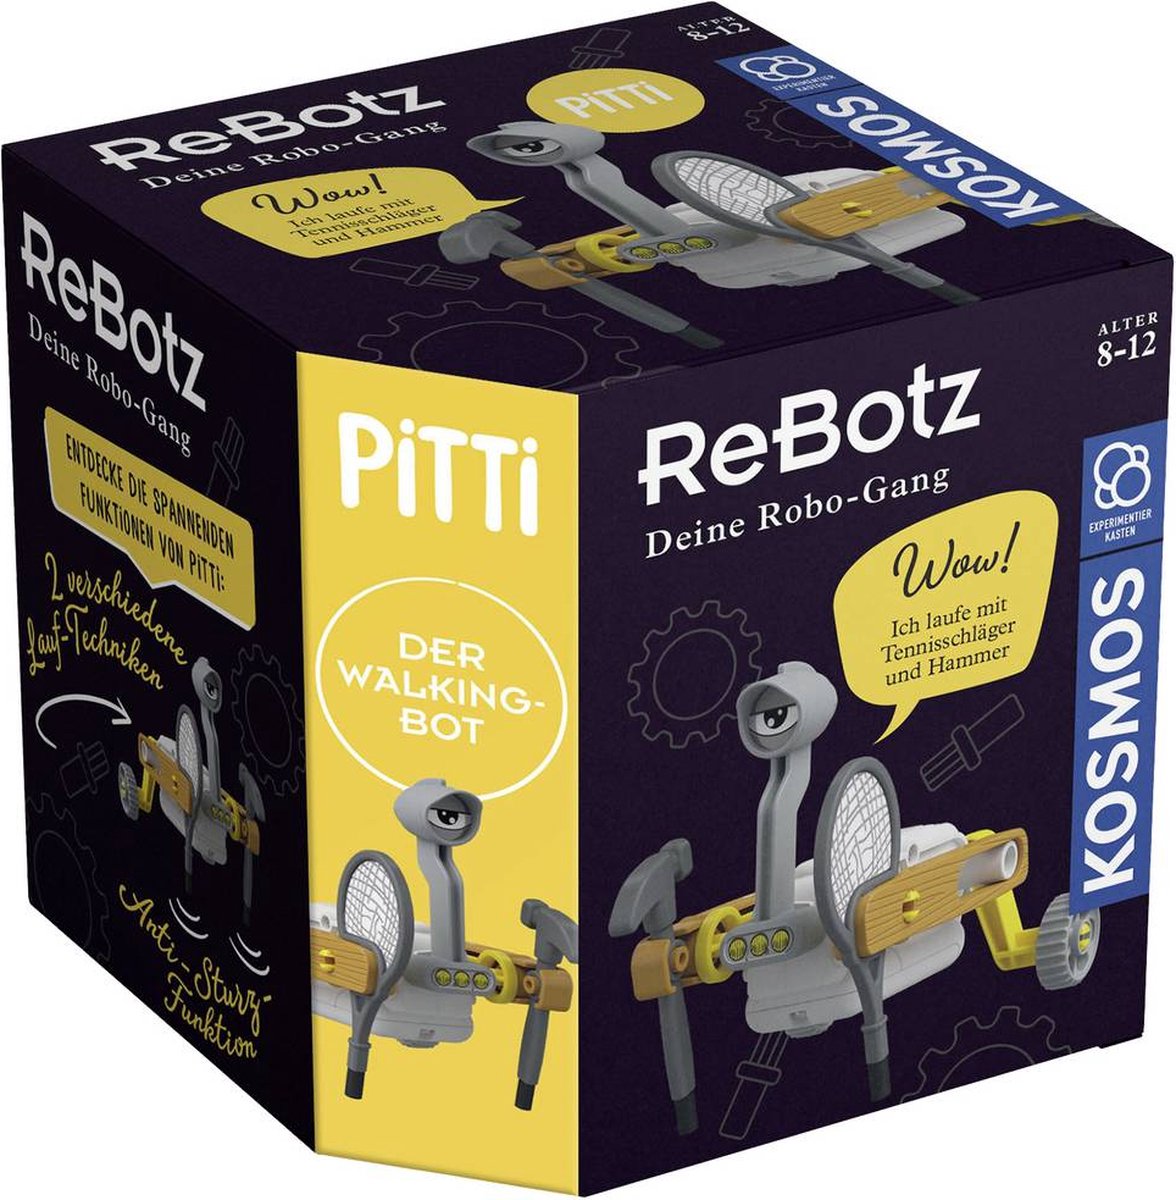 Kosmos ReBotz - Pitti der Walking-Bot 602581 Robot bouwpakket Uitvoering (module): Bouwpakket